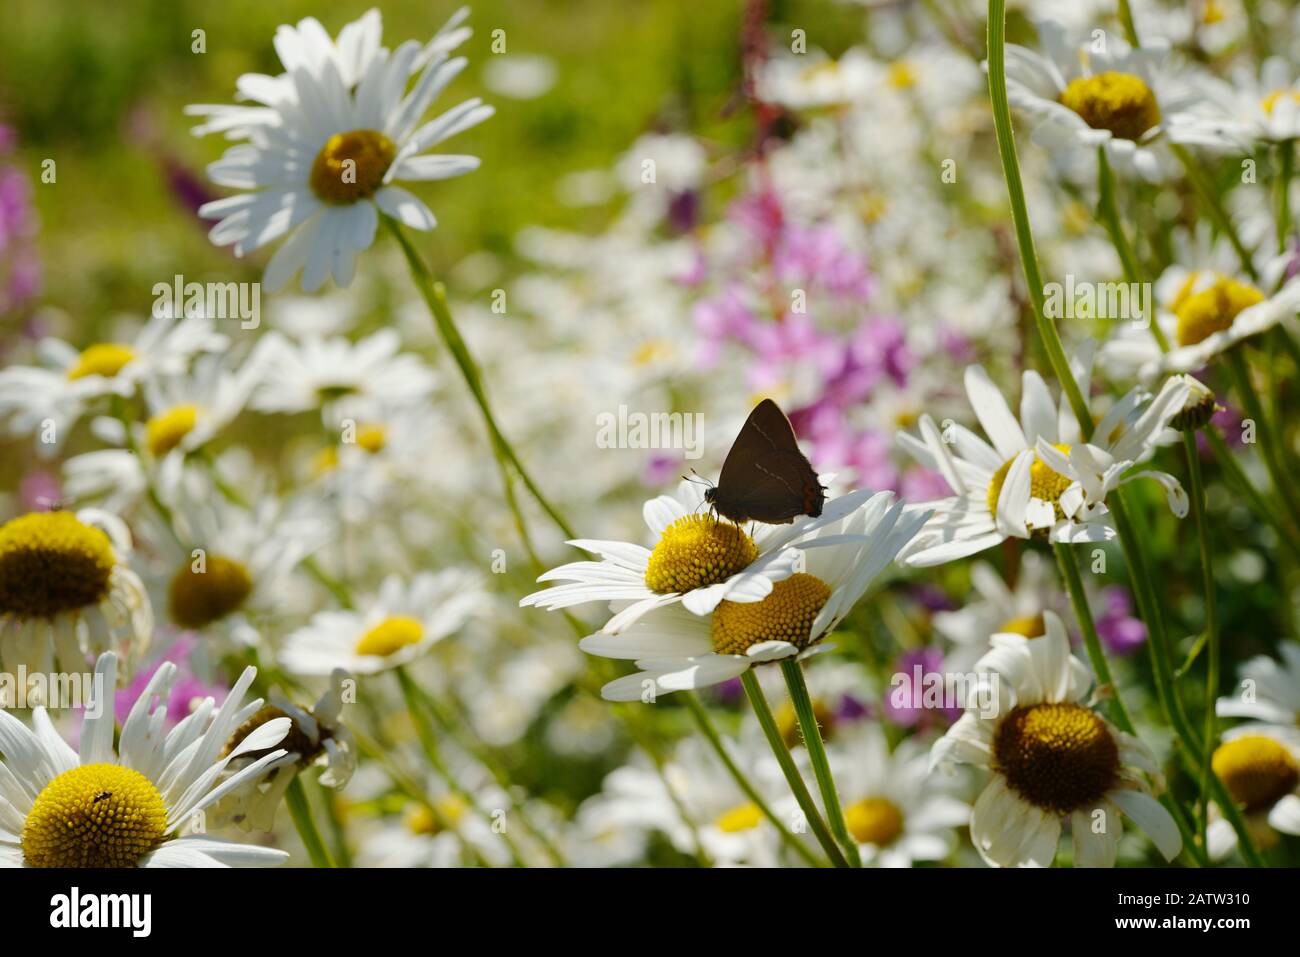 Satyrium w-album, White Letter Hairstreak butterfly feeding on Ox eye Daisies, Wales, UK. Stock Photo